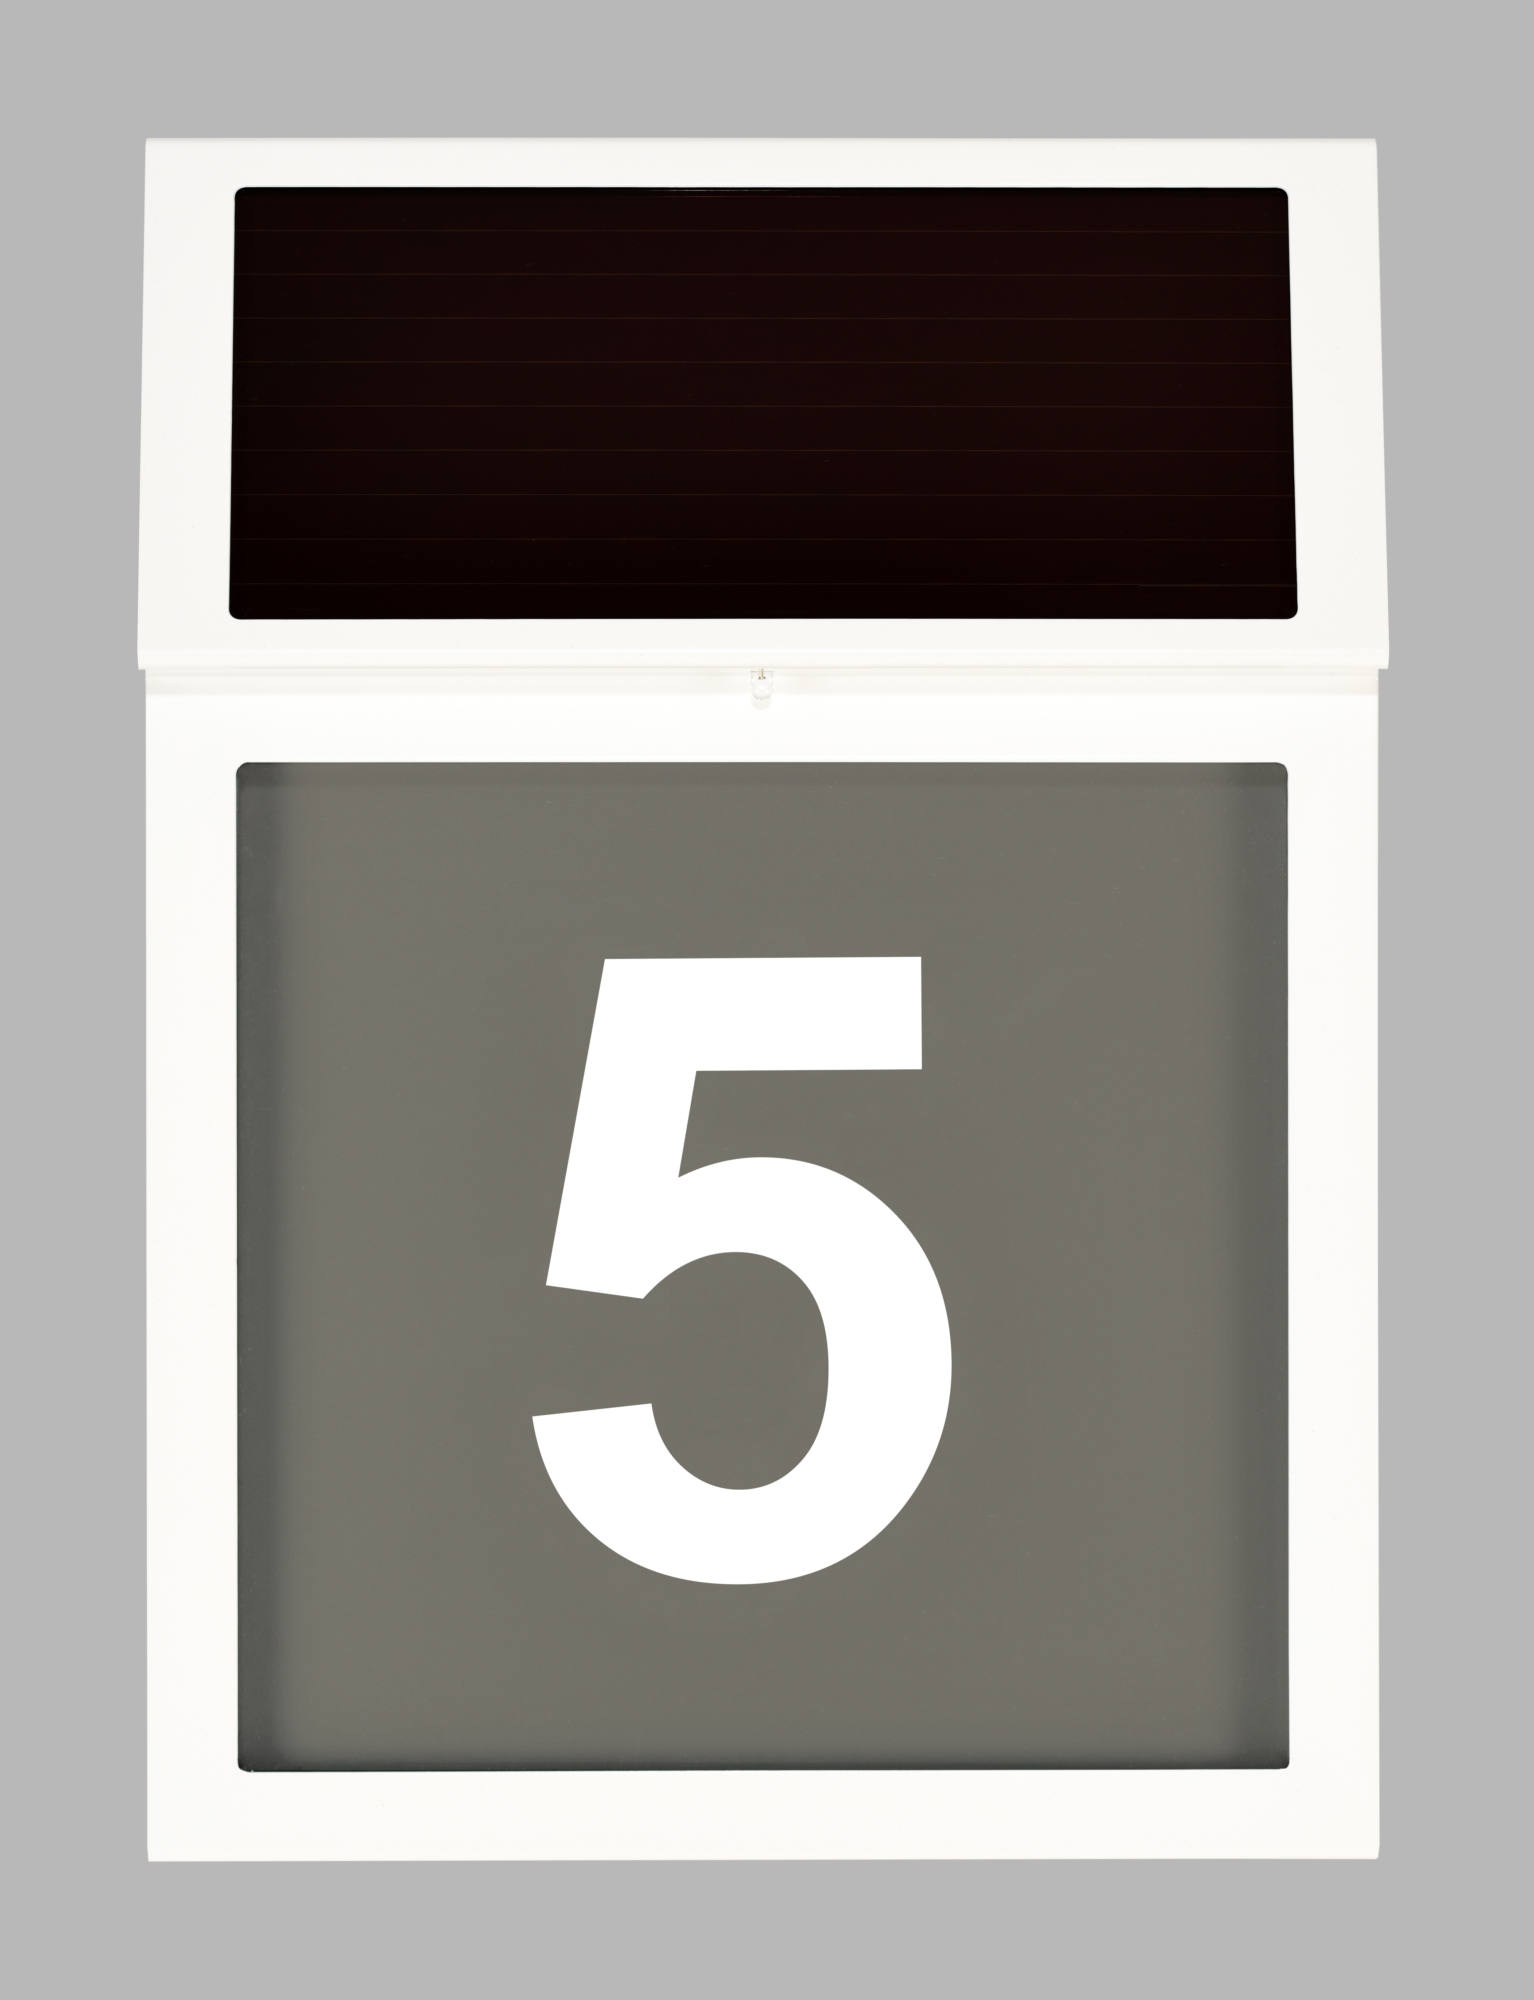 Solar-Hausnummer mit weißem Gehäuse und grauem Hintergrund in der Frontansicht. Beschriftet mit einer Hausnummer in der Mitte.